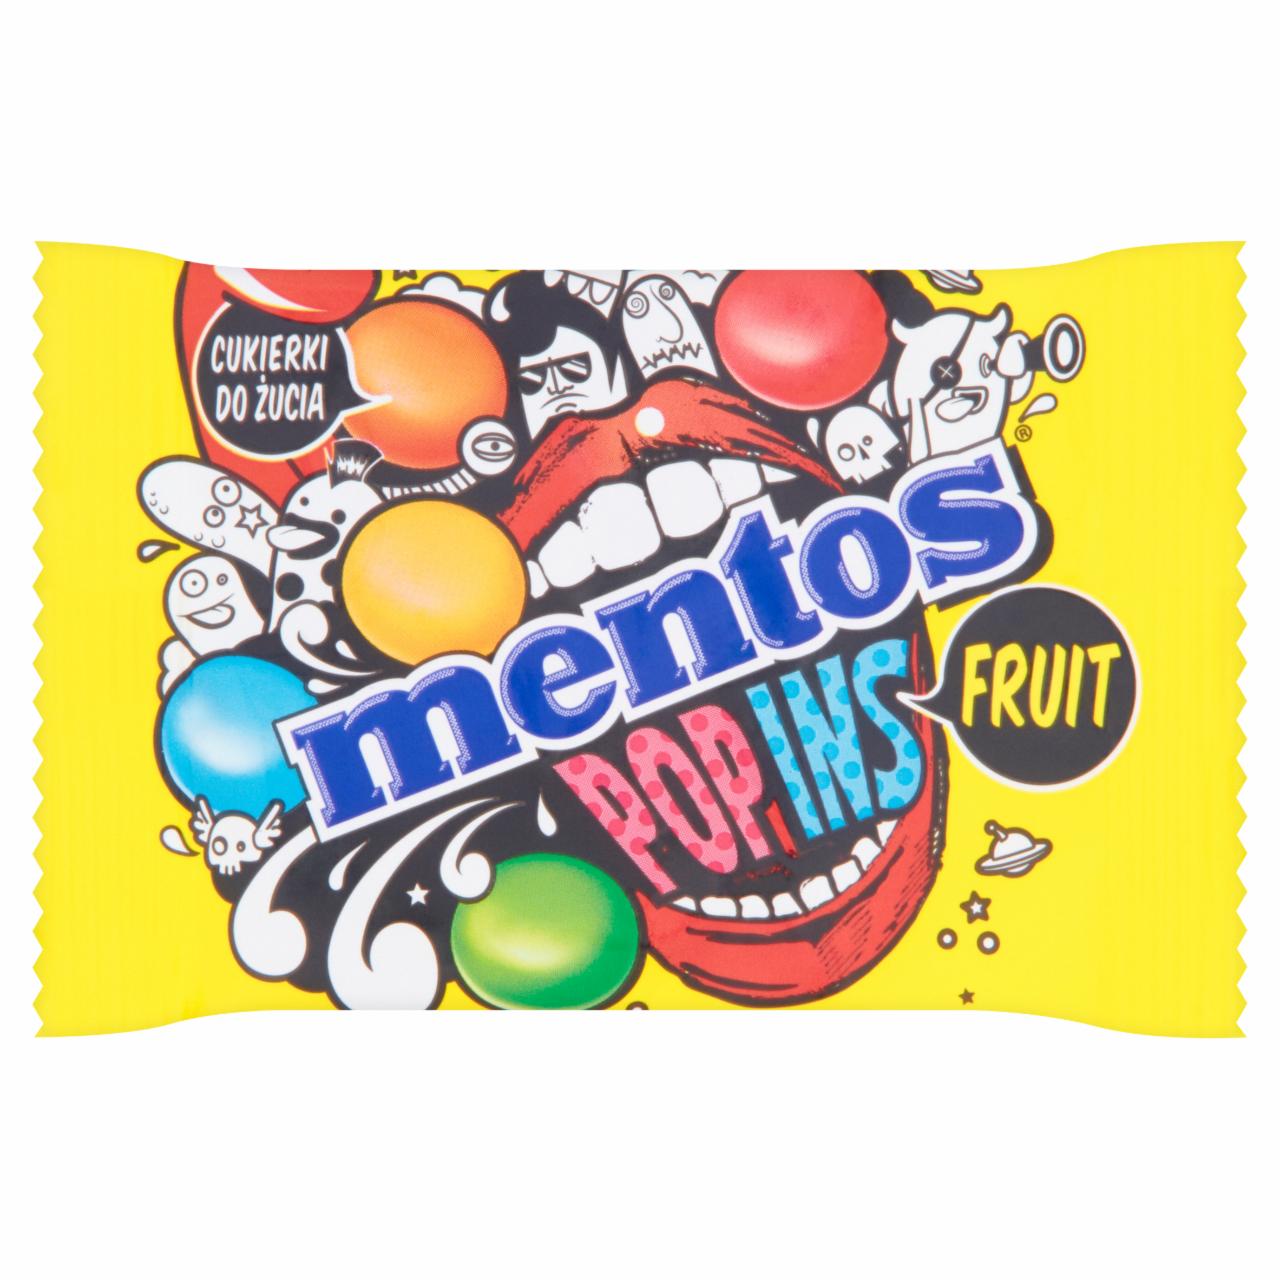 Zdjęcia - Mentos Pop Ins Fruit Cukierki do żucia 25 g